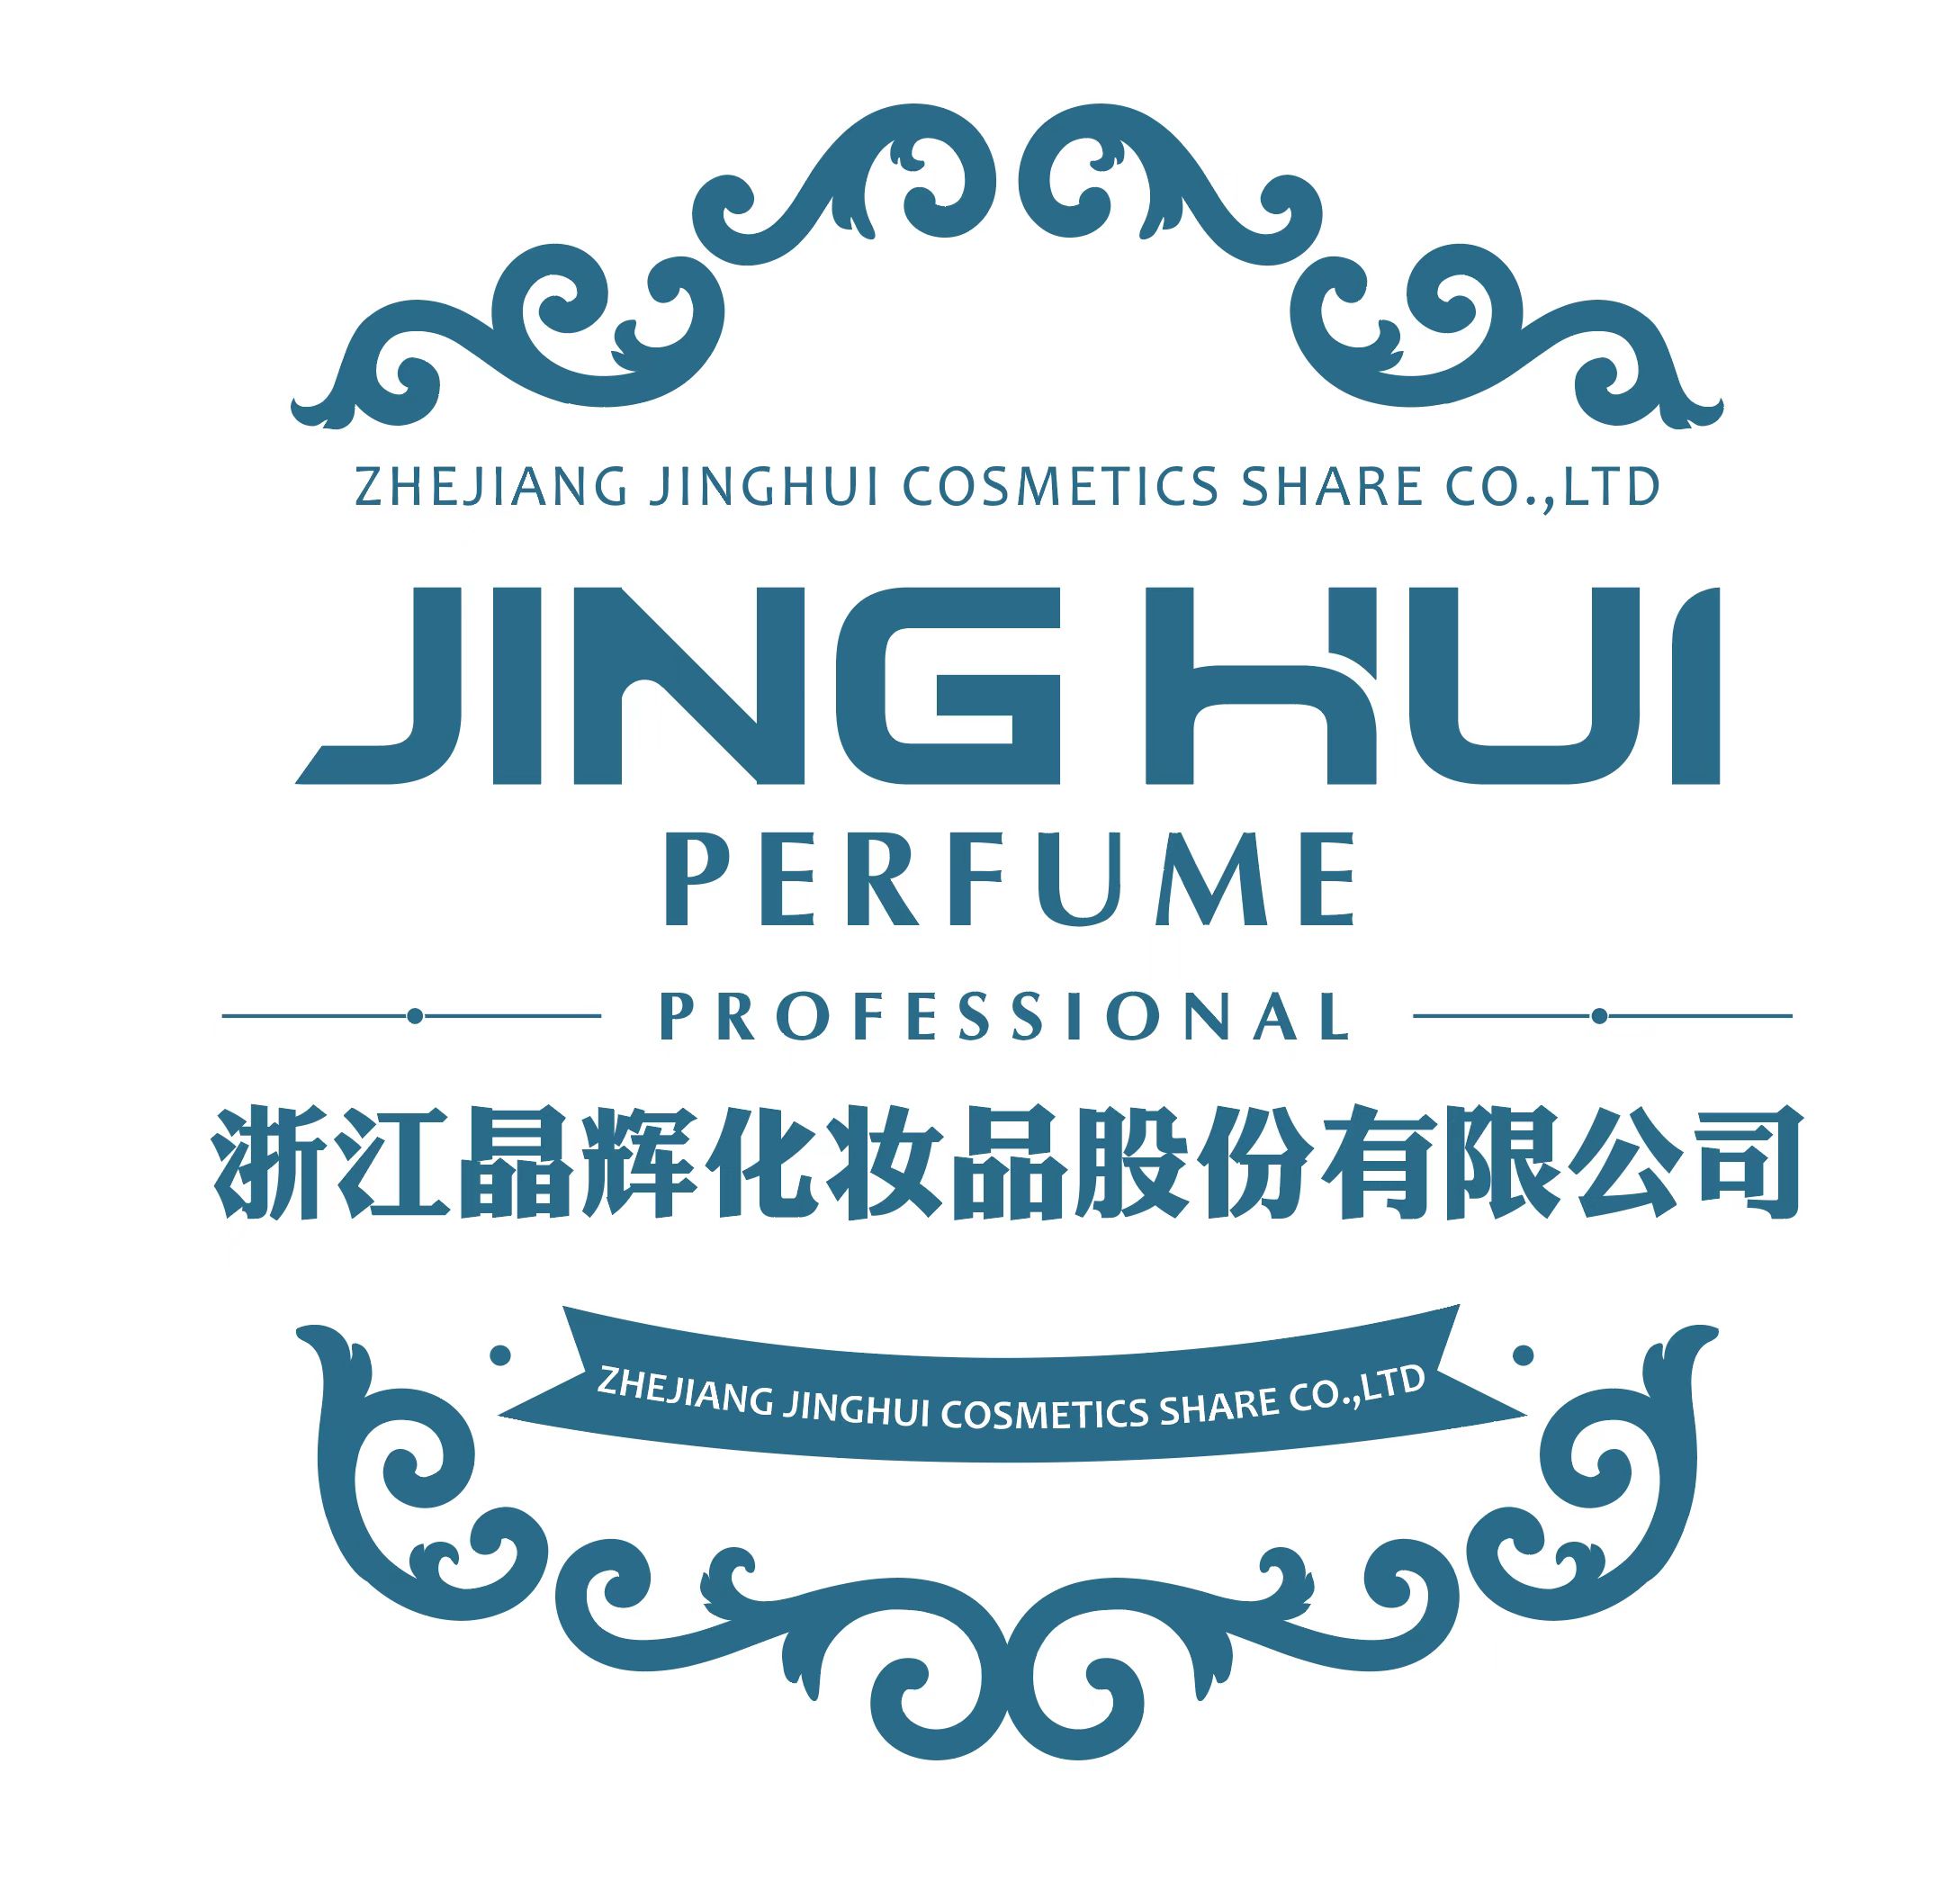 Zhejiang Jinghui Cosmetics Share Co., Ltd.